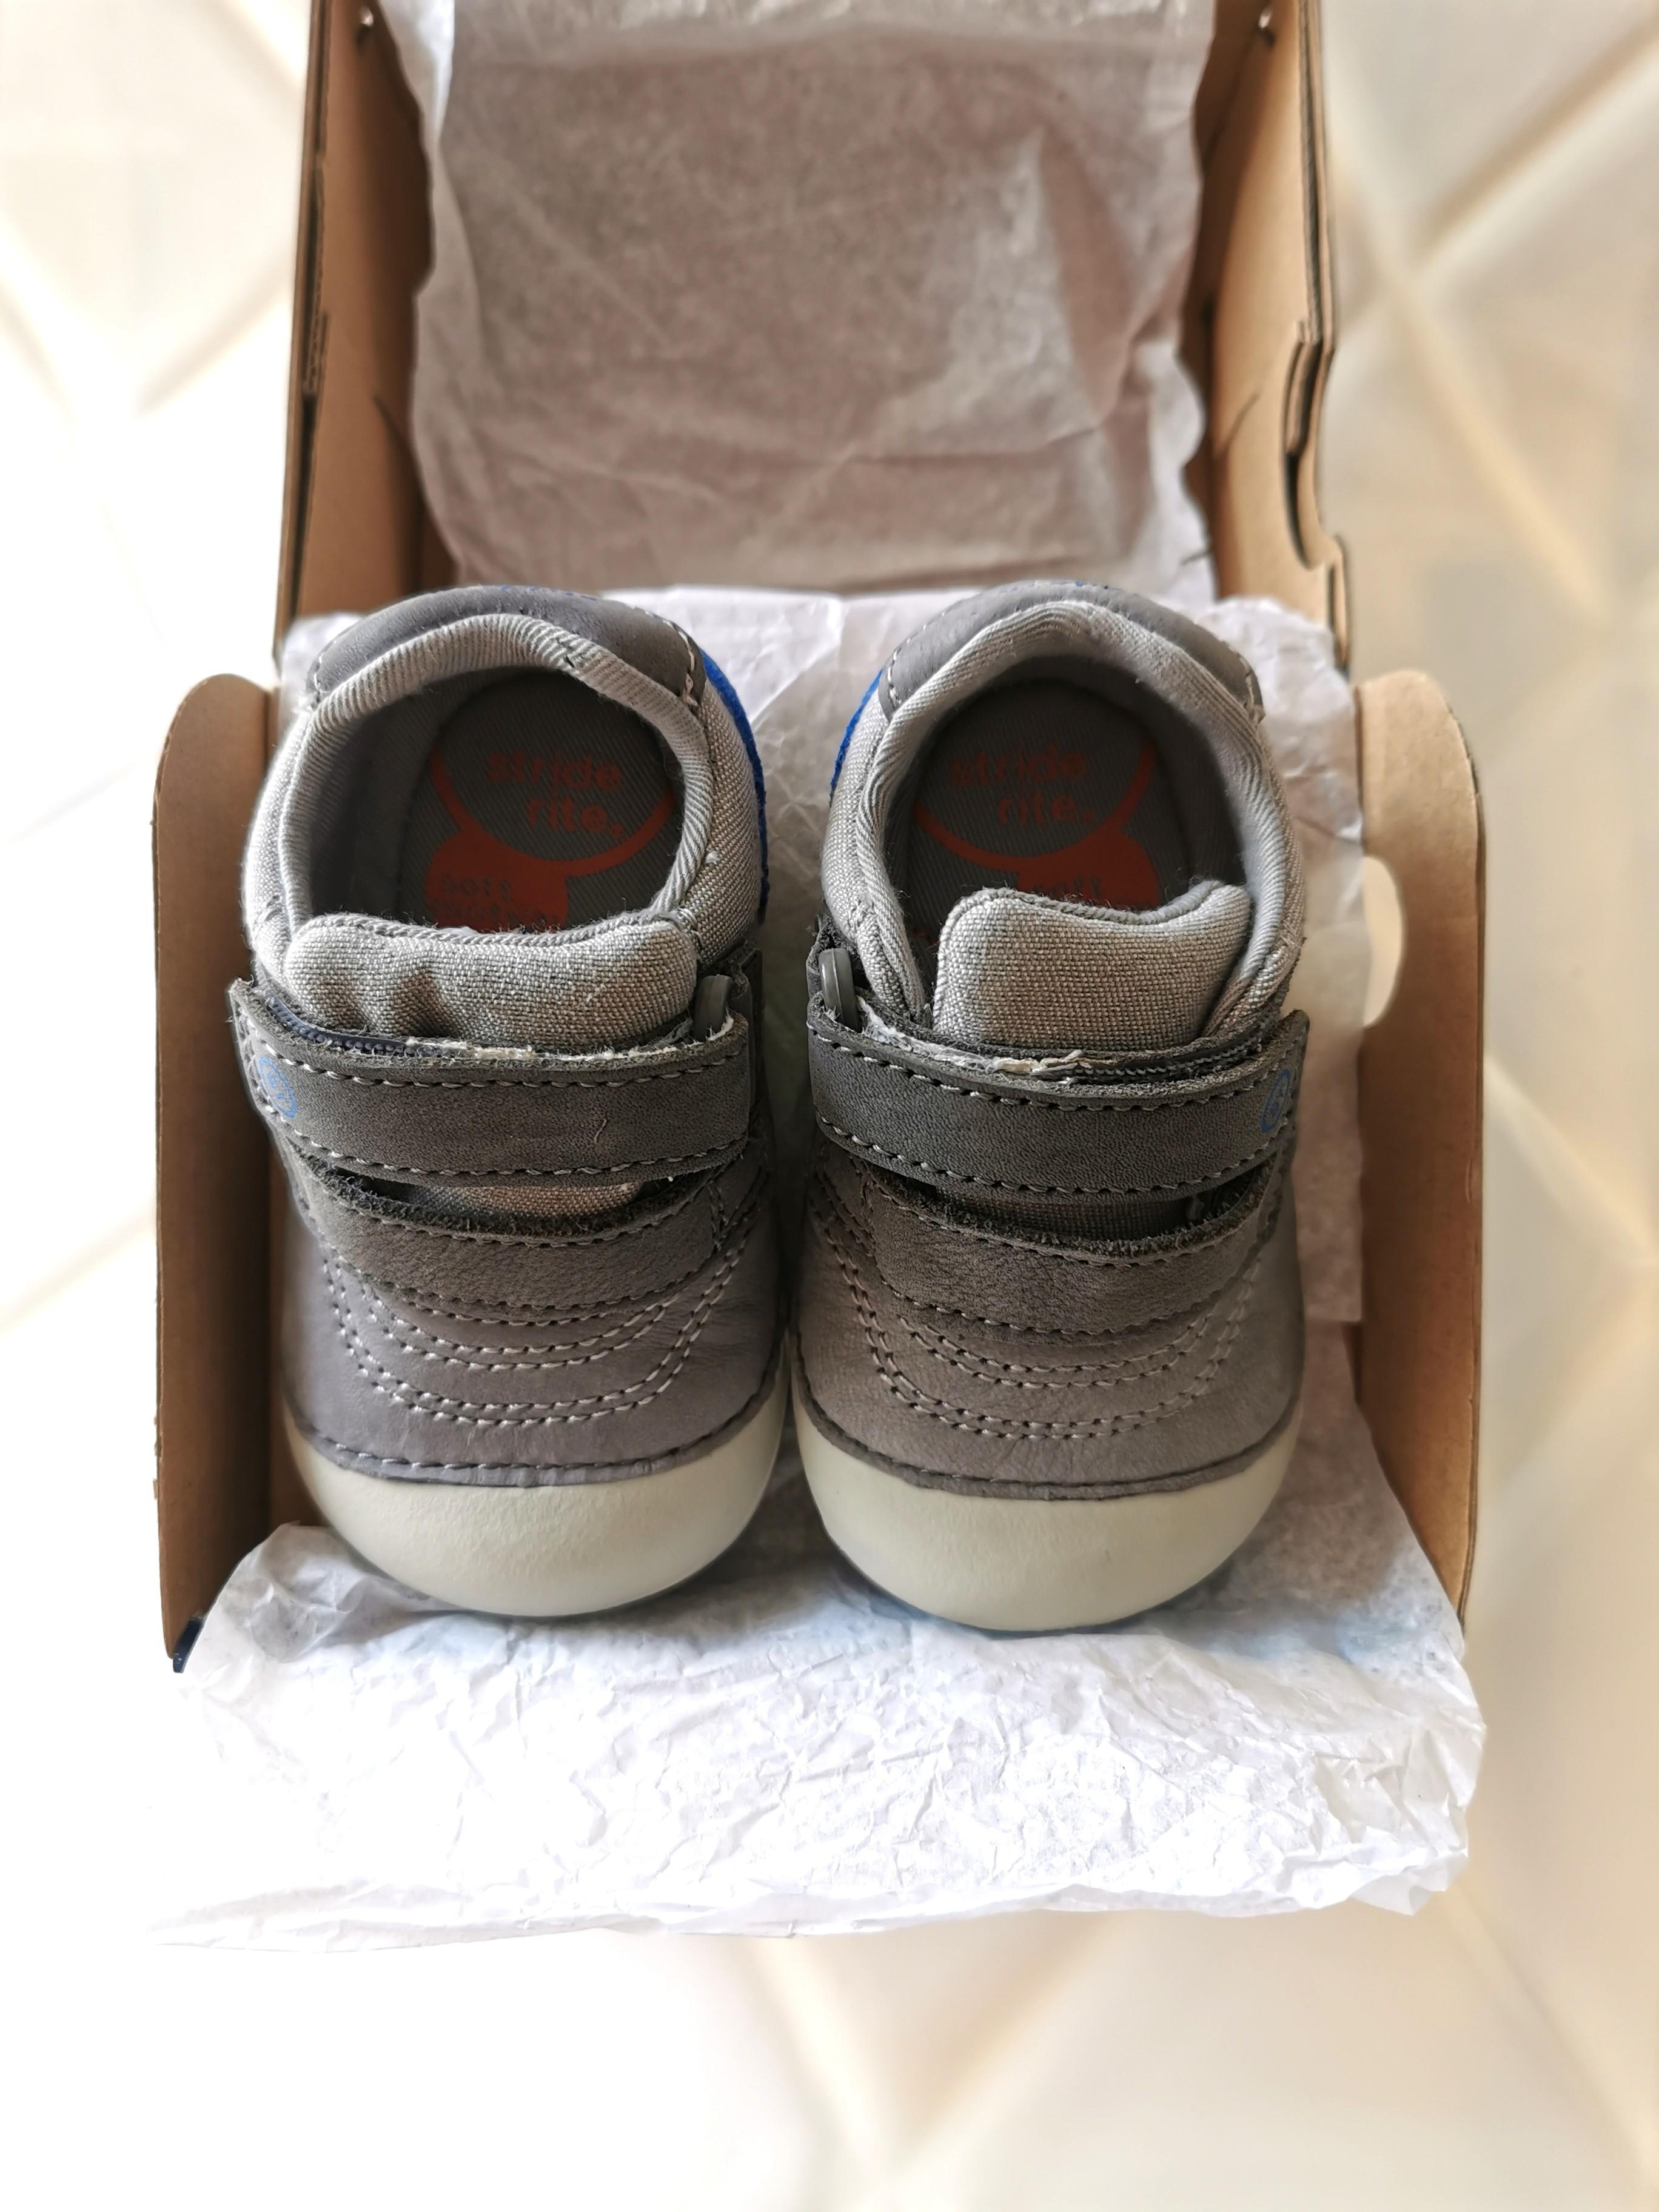 size 4w infant shoes